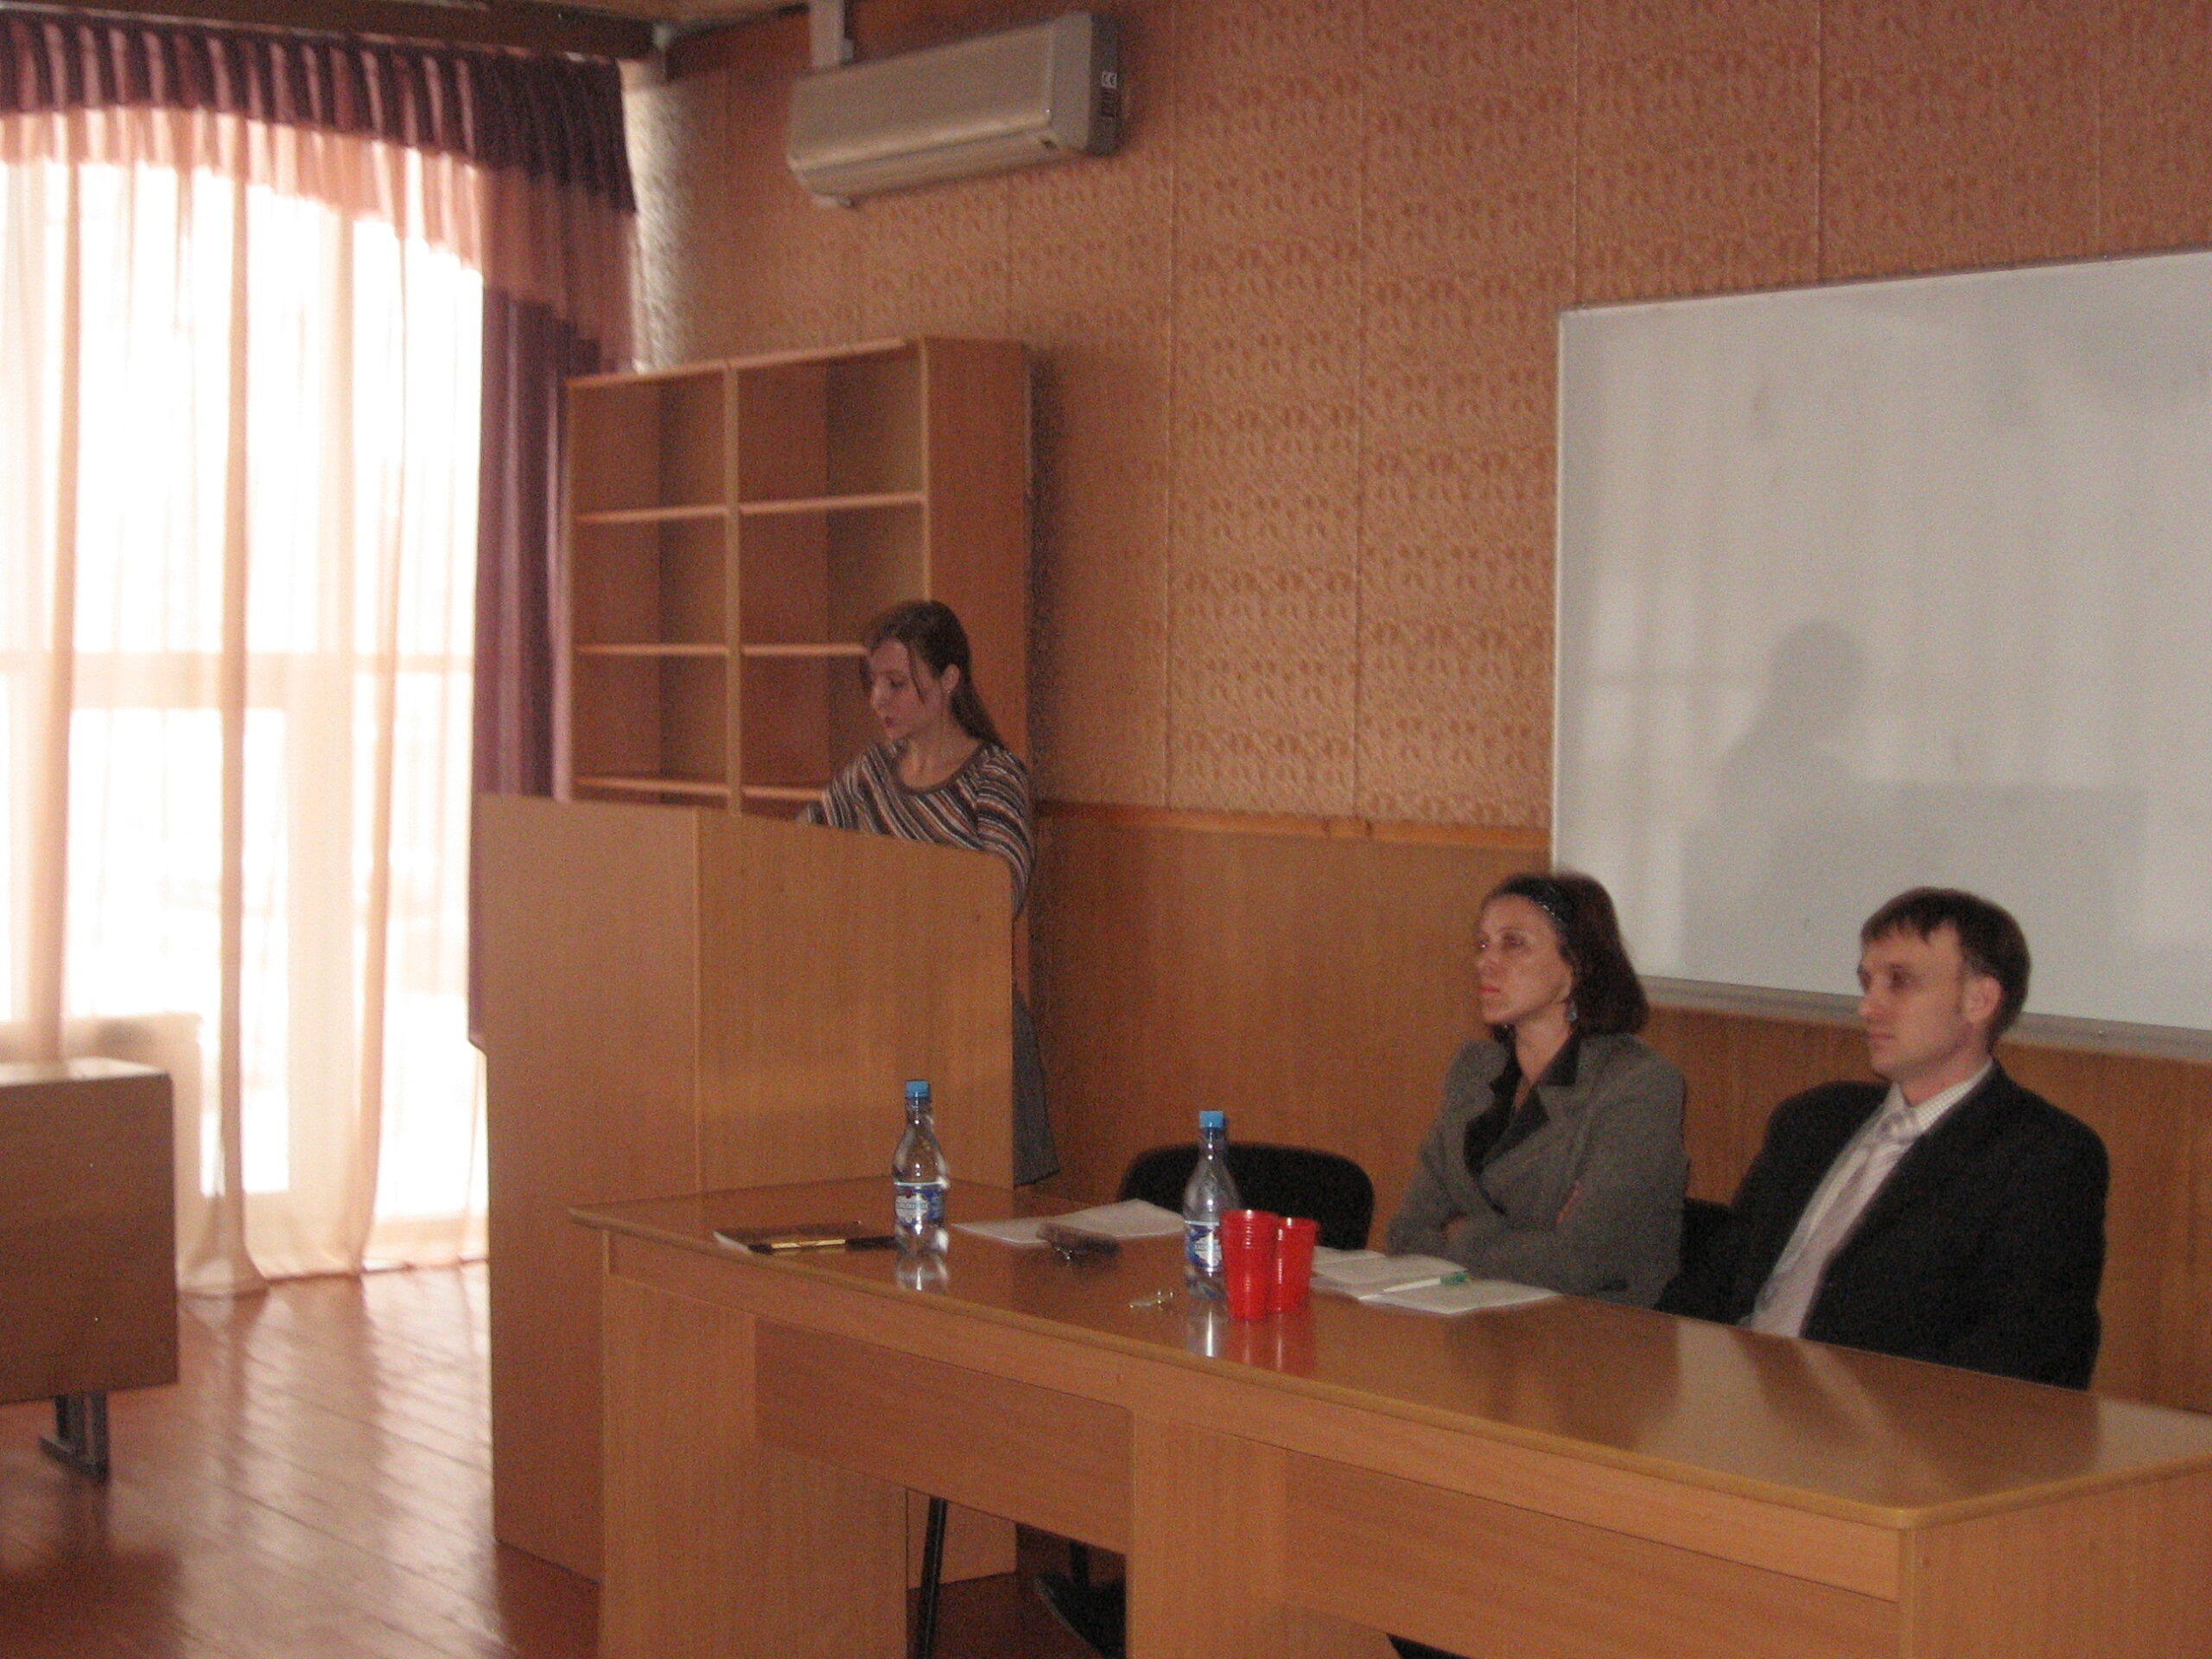 Заседание секции «Устная история и этнография.». Справа налево: Куприянова И.В., Назаров И.И.  7 декабря 2007 г.